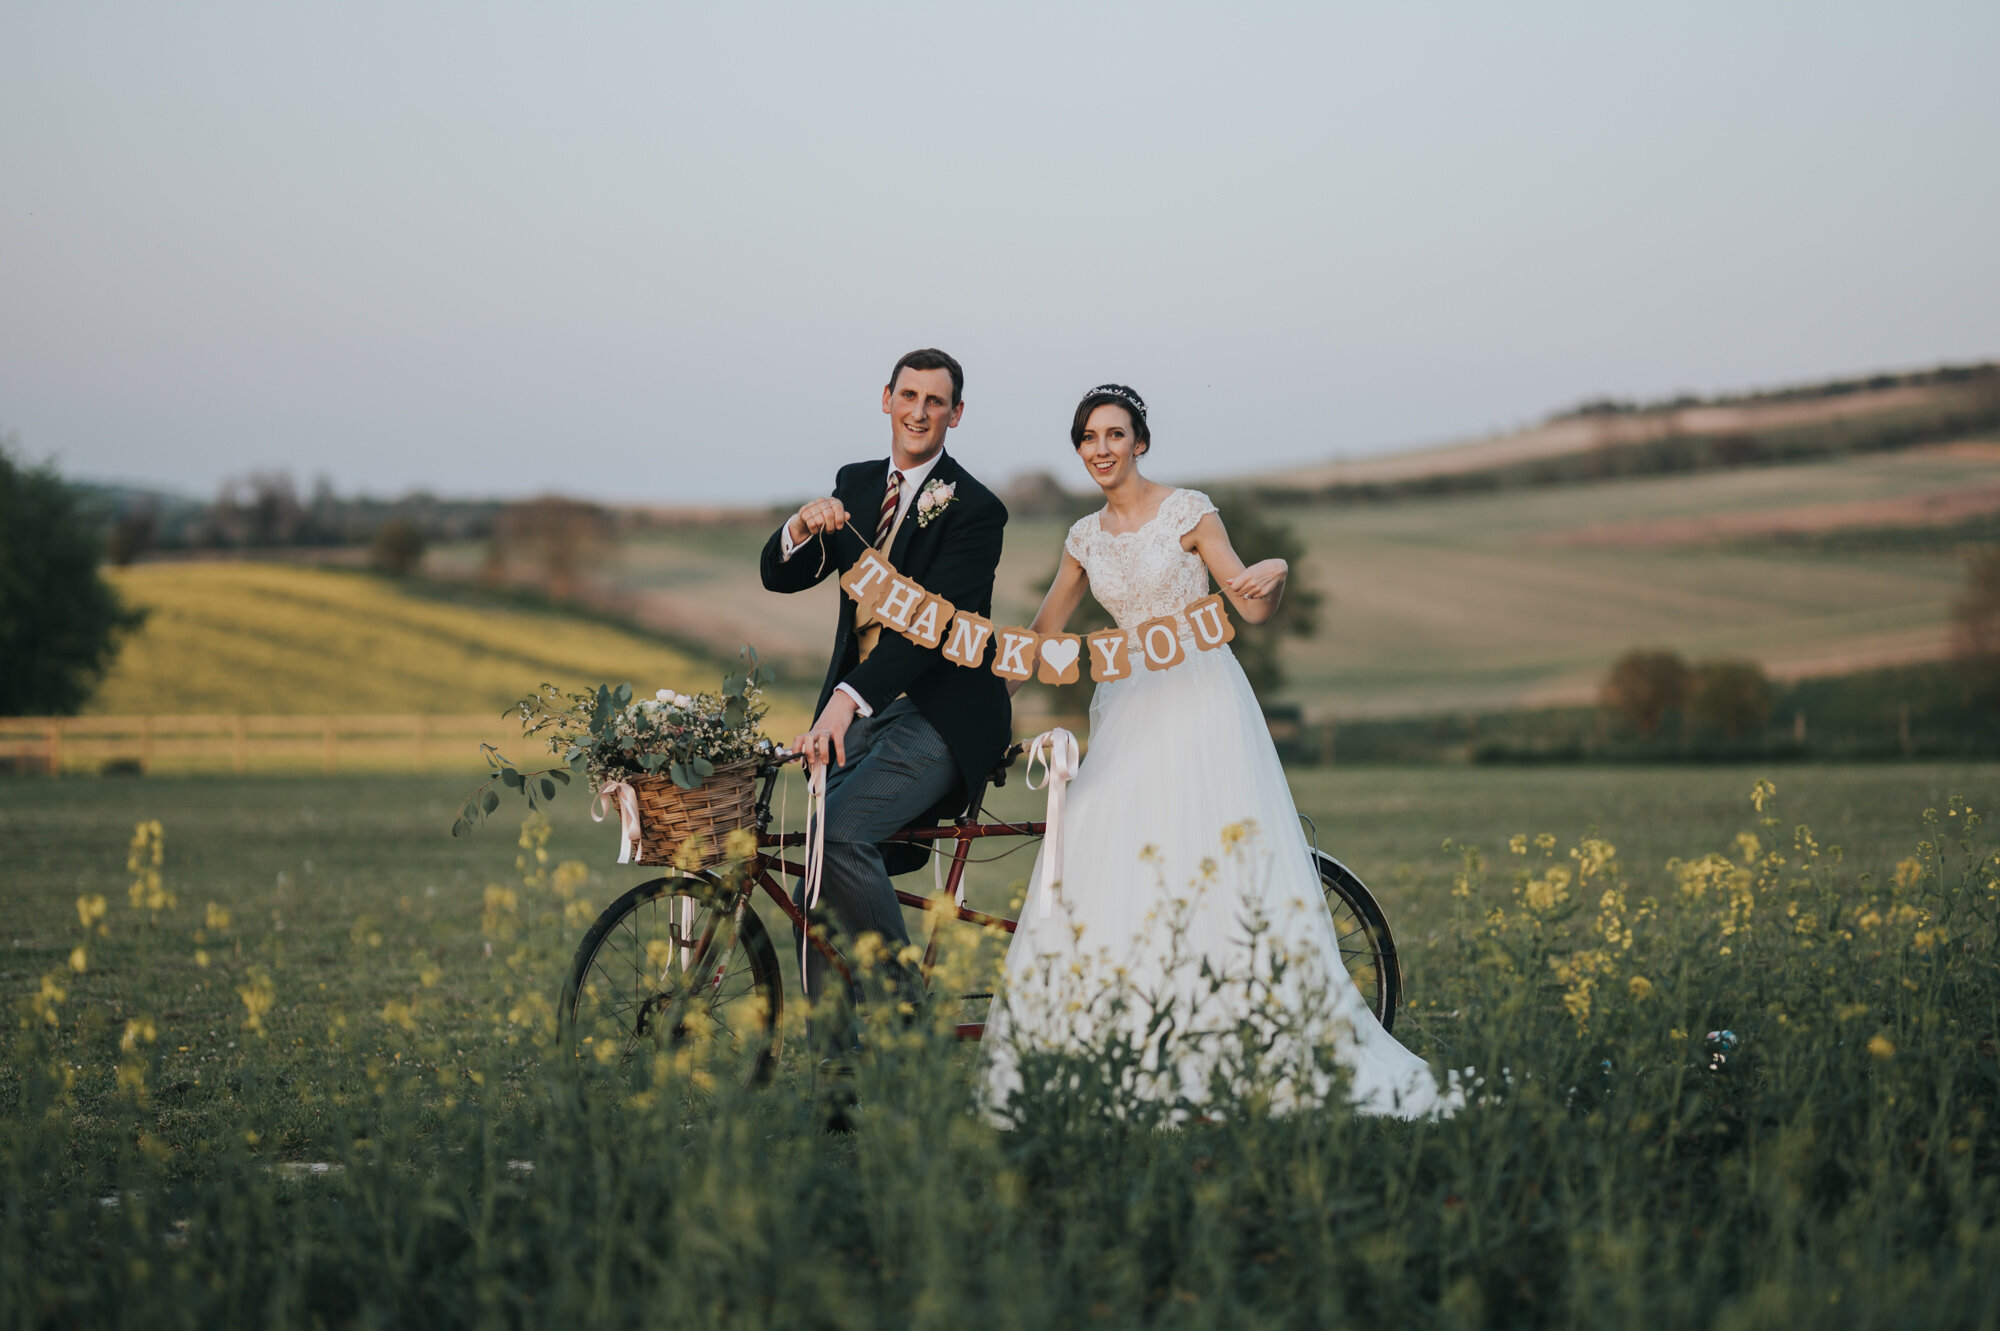 wellington-barn-wedding-photographer-wiltshire-35.jpg